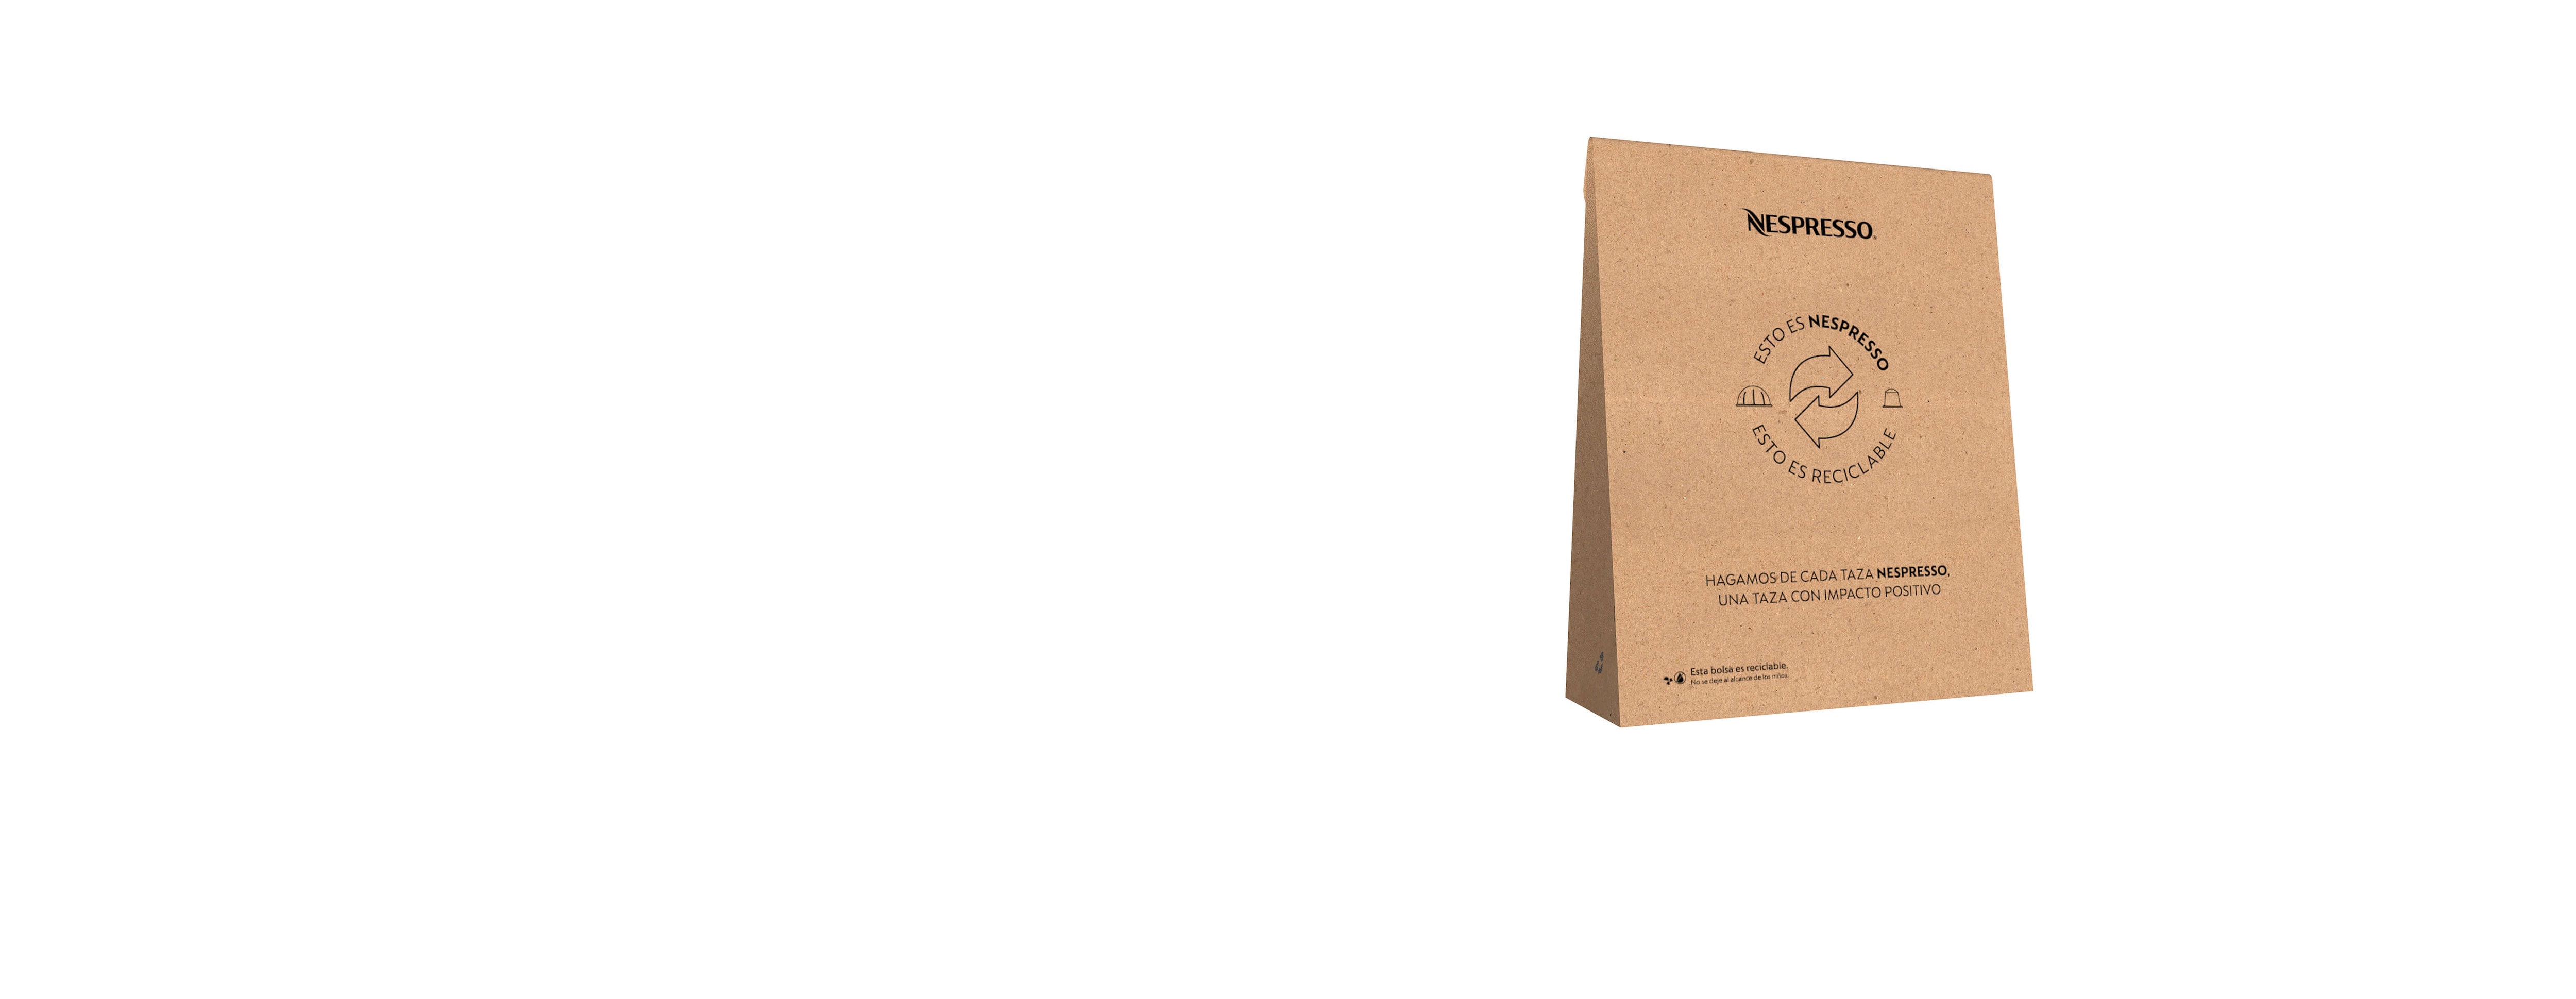 Nespresso Recycling Bag iBox Pod Recycling  Nespresso Taiwan